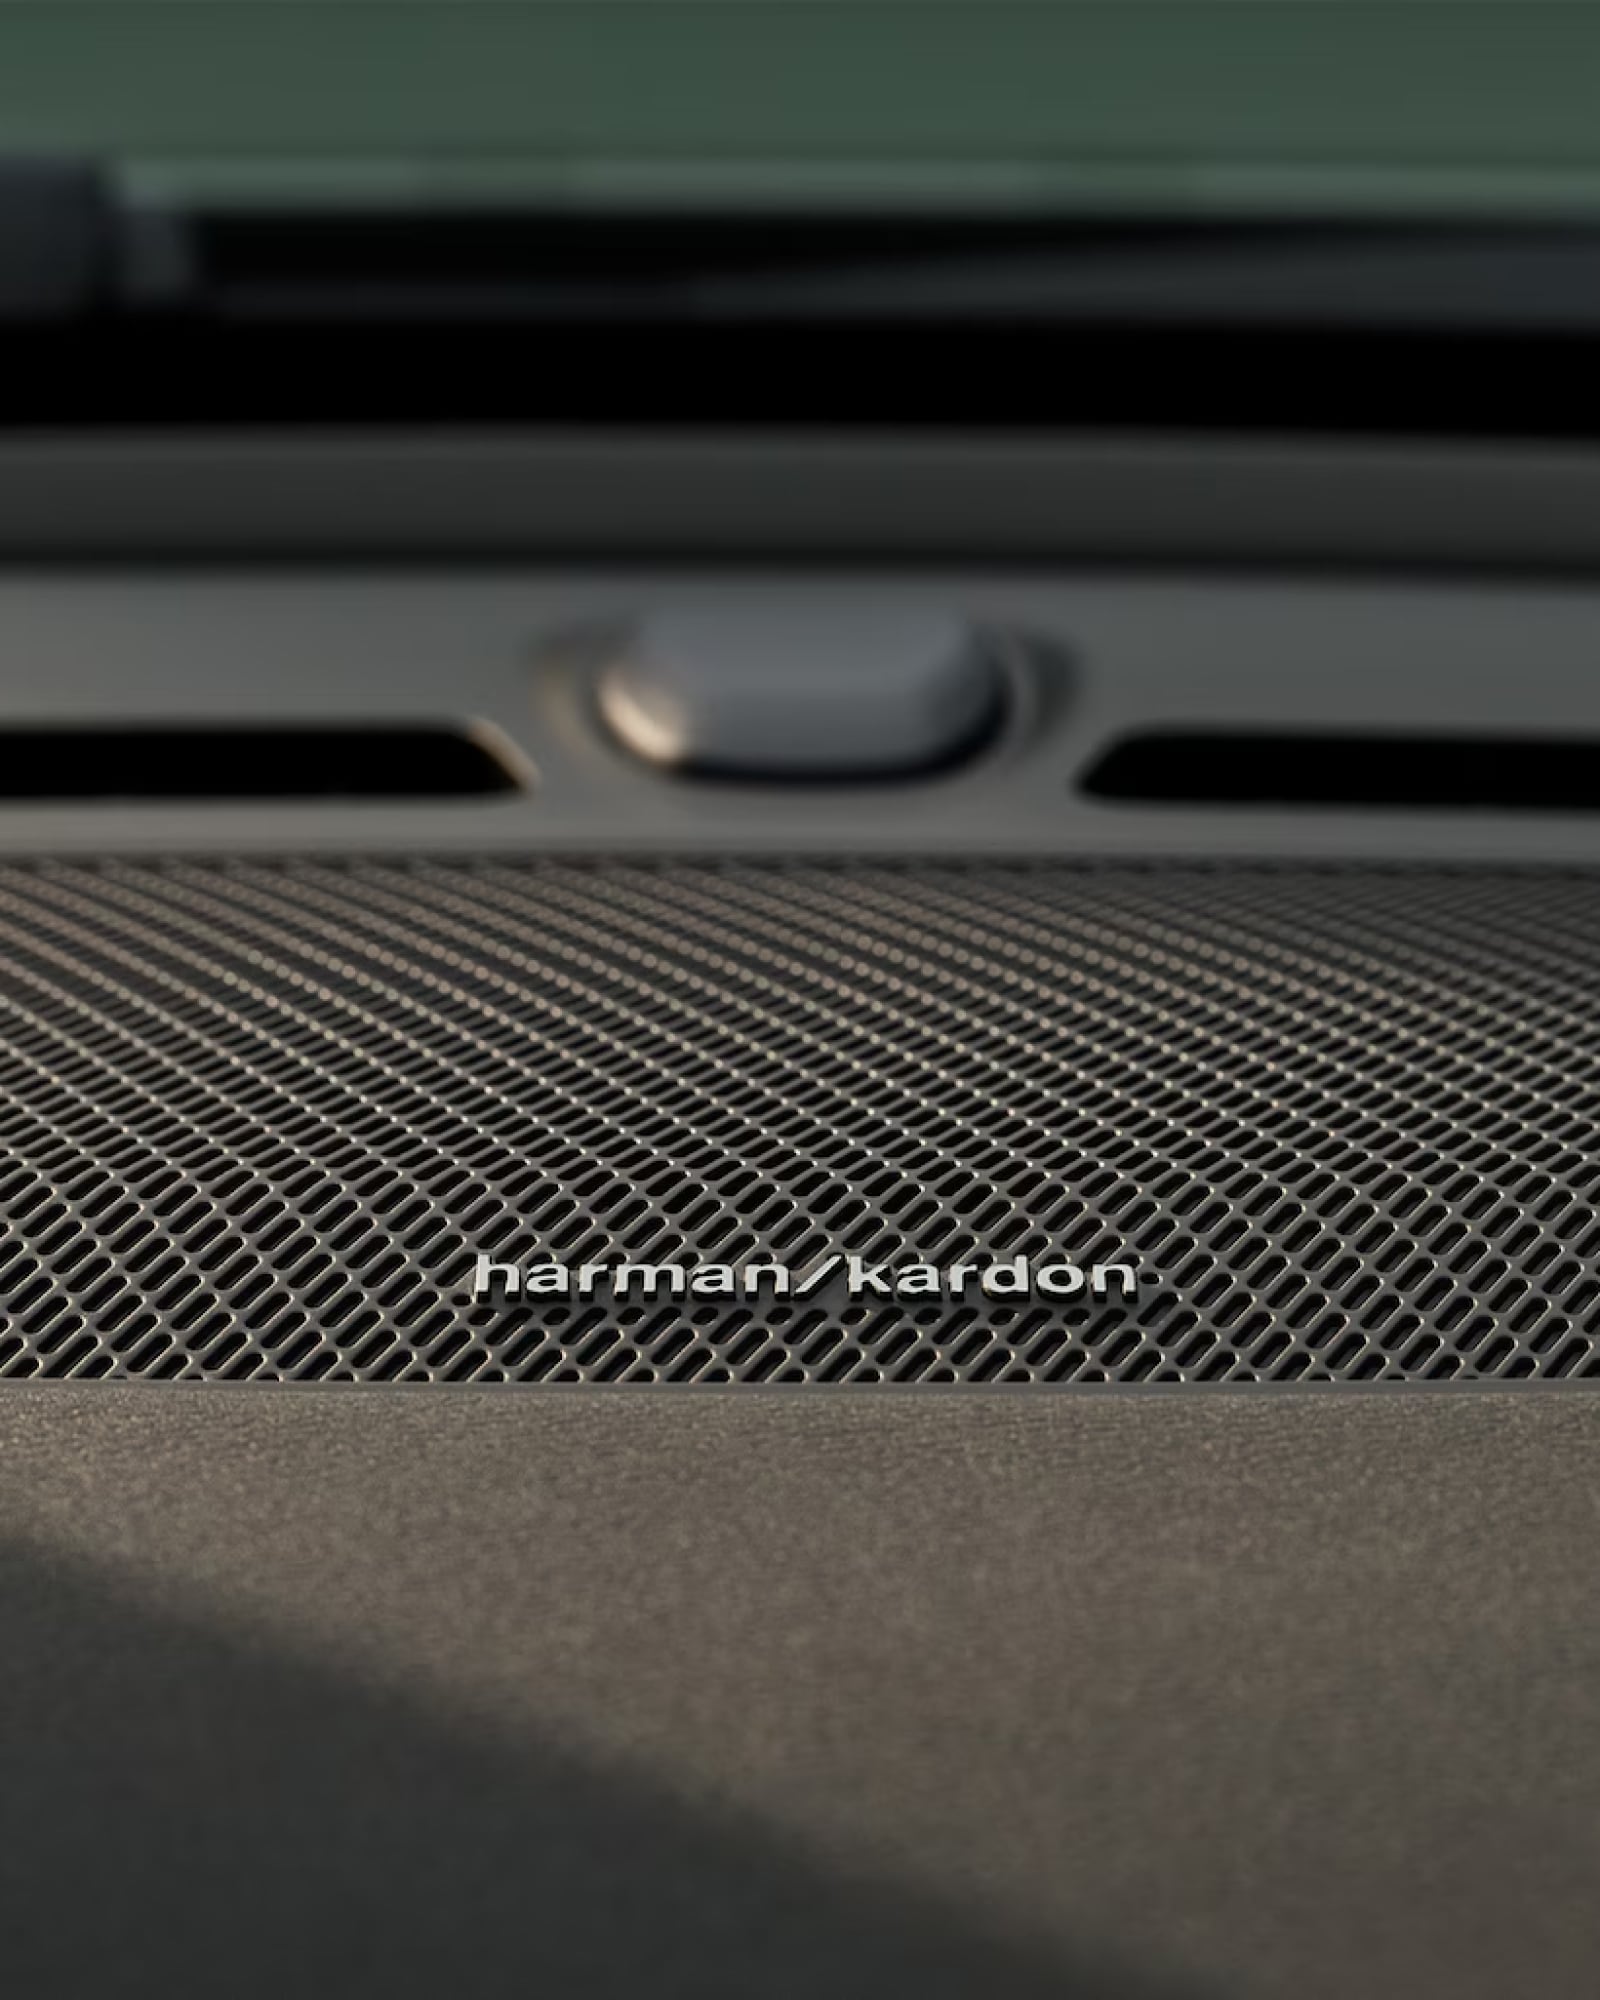 Detailansicht des Harman Kardon-Lautsprechers in einem Volvo XC40.